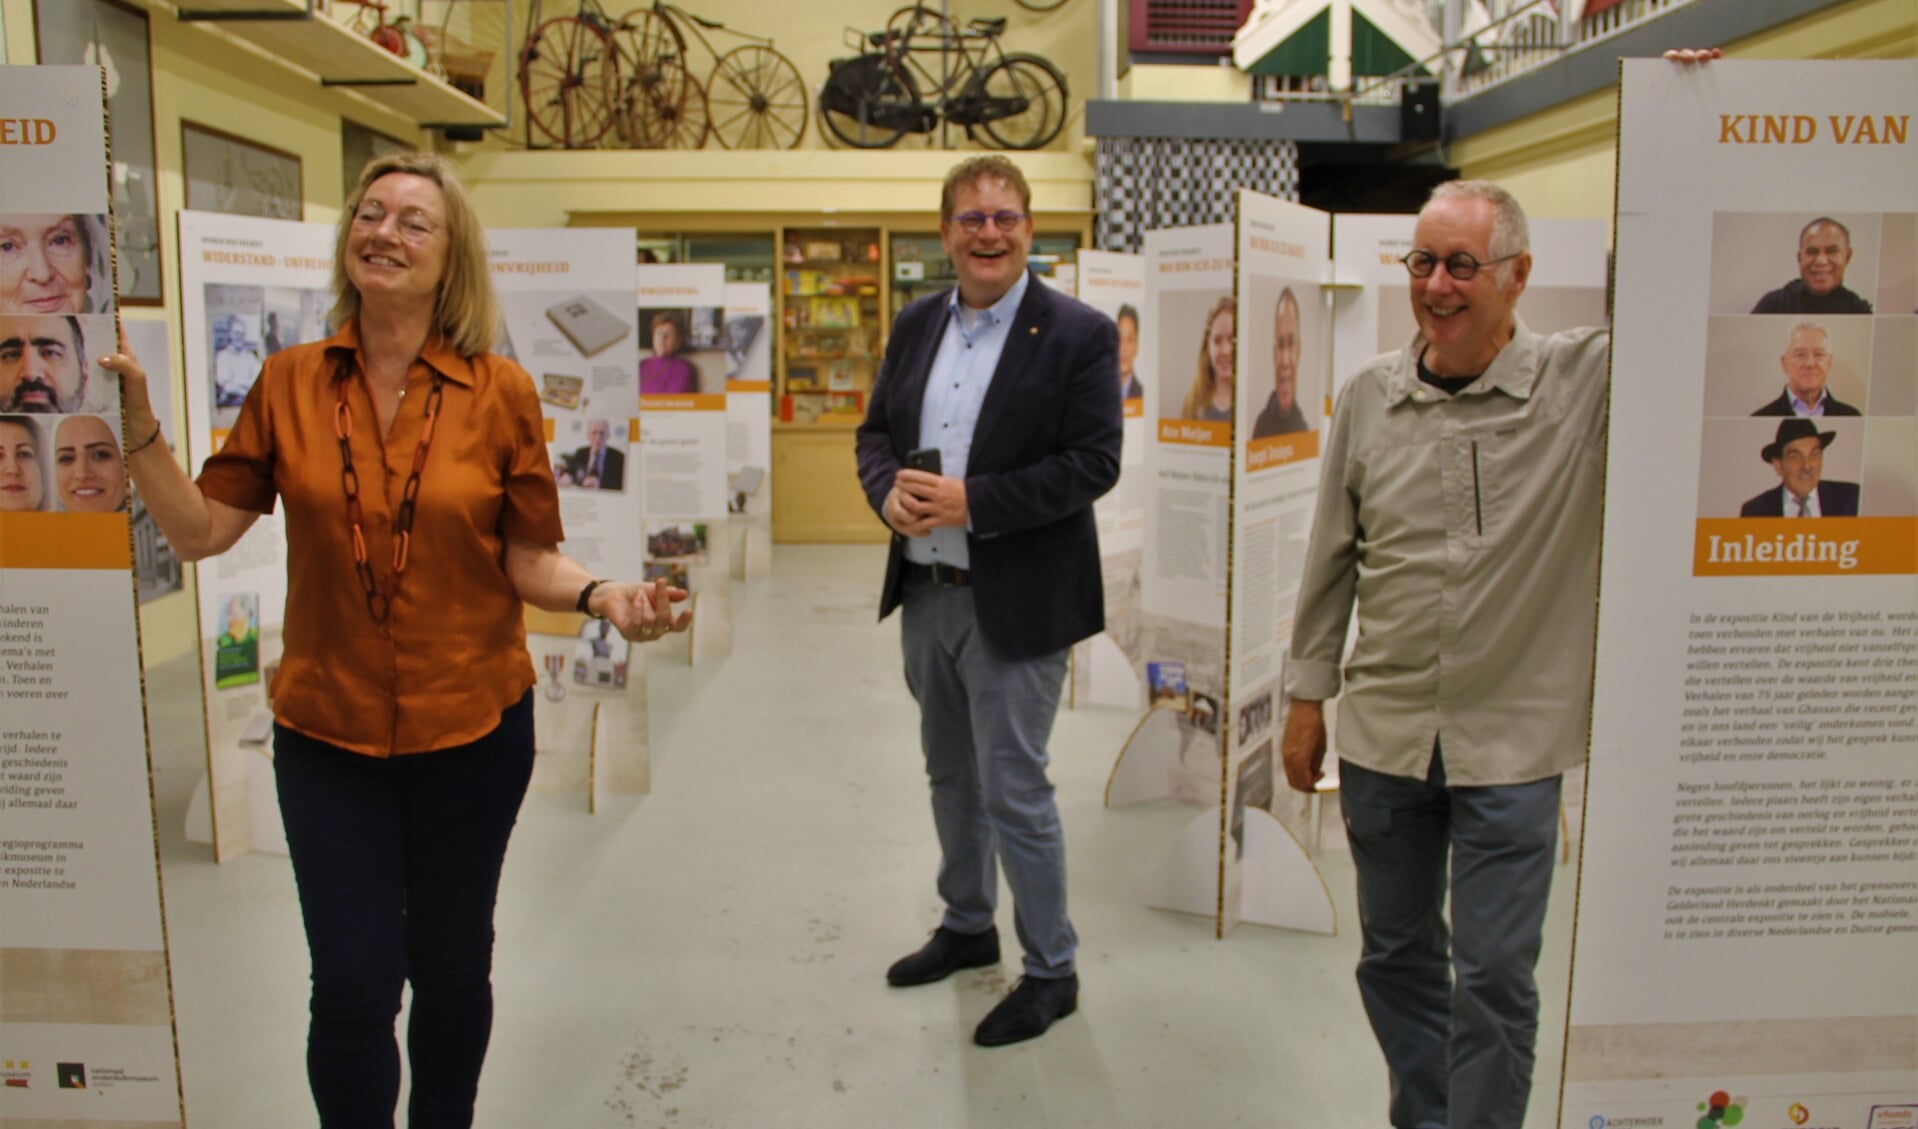 Gerda Brethouwer, Henk Jan Tannemaat en Sjoerd Kemeling  (vlnr) bij de tentoonstelling in de Museumfabriek. Foto Lineke Voltman

